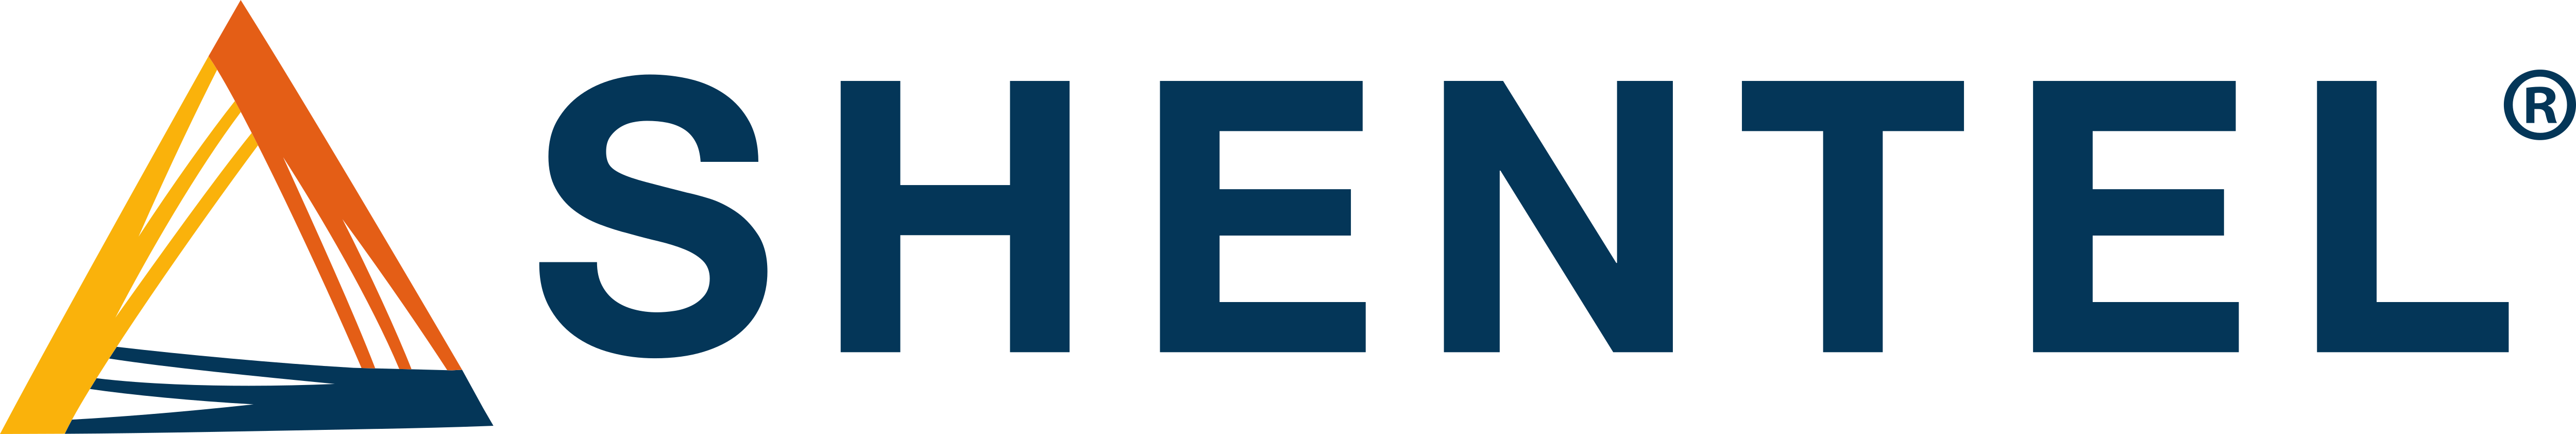 Shentel – Logos Download